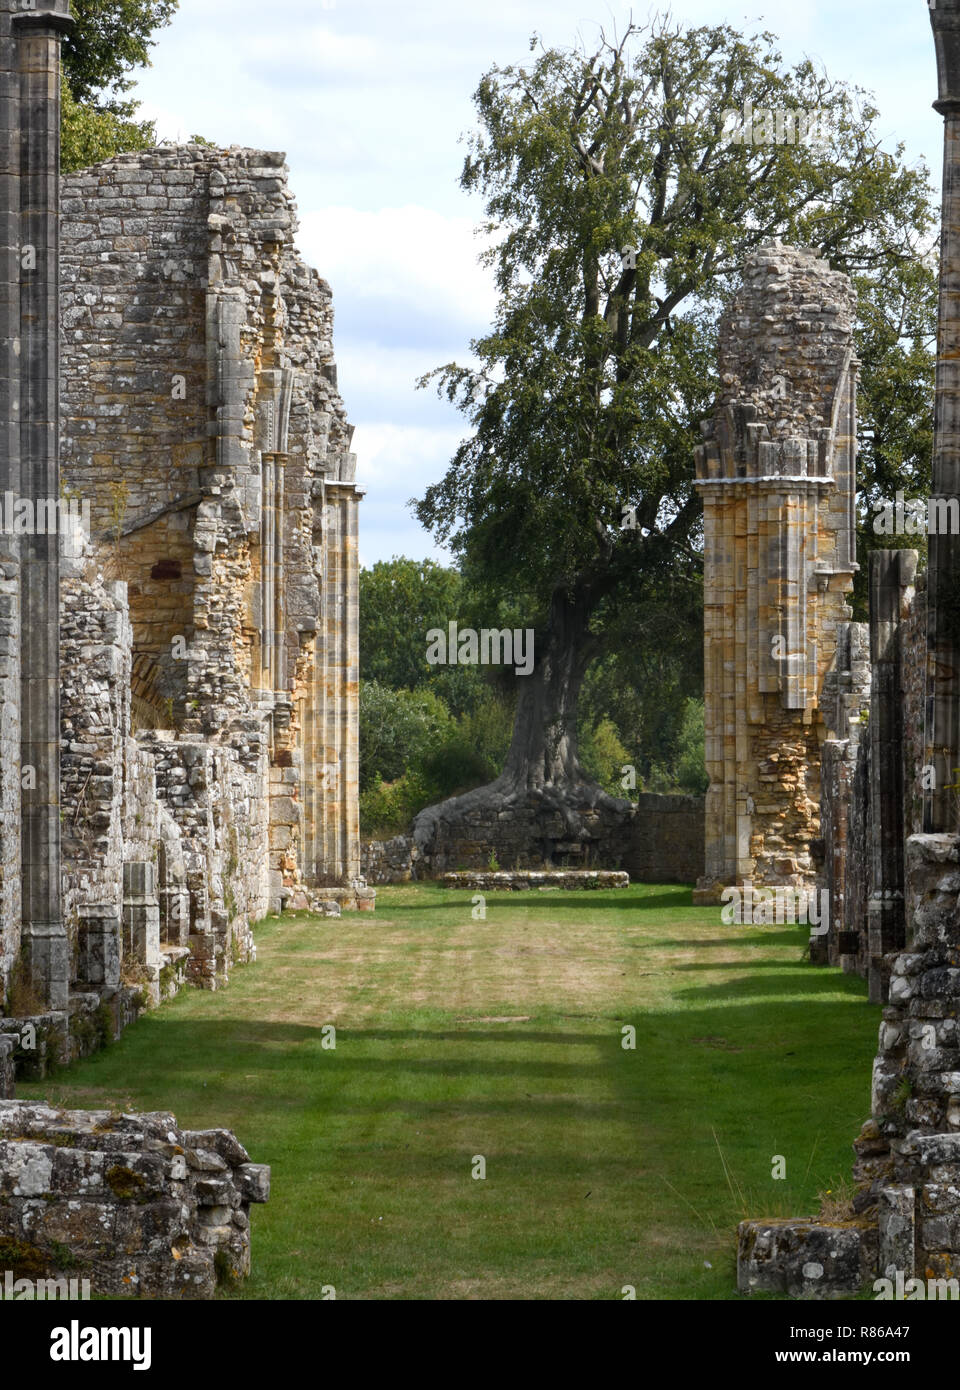 Les ruines de l'abbaye de Bayham datant du xiiie au xve siècle. Peu de Bayham, Tunbridge Wells, Kent, UK. Banque D'Images